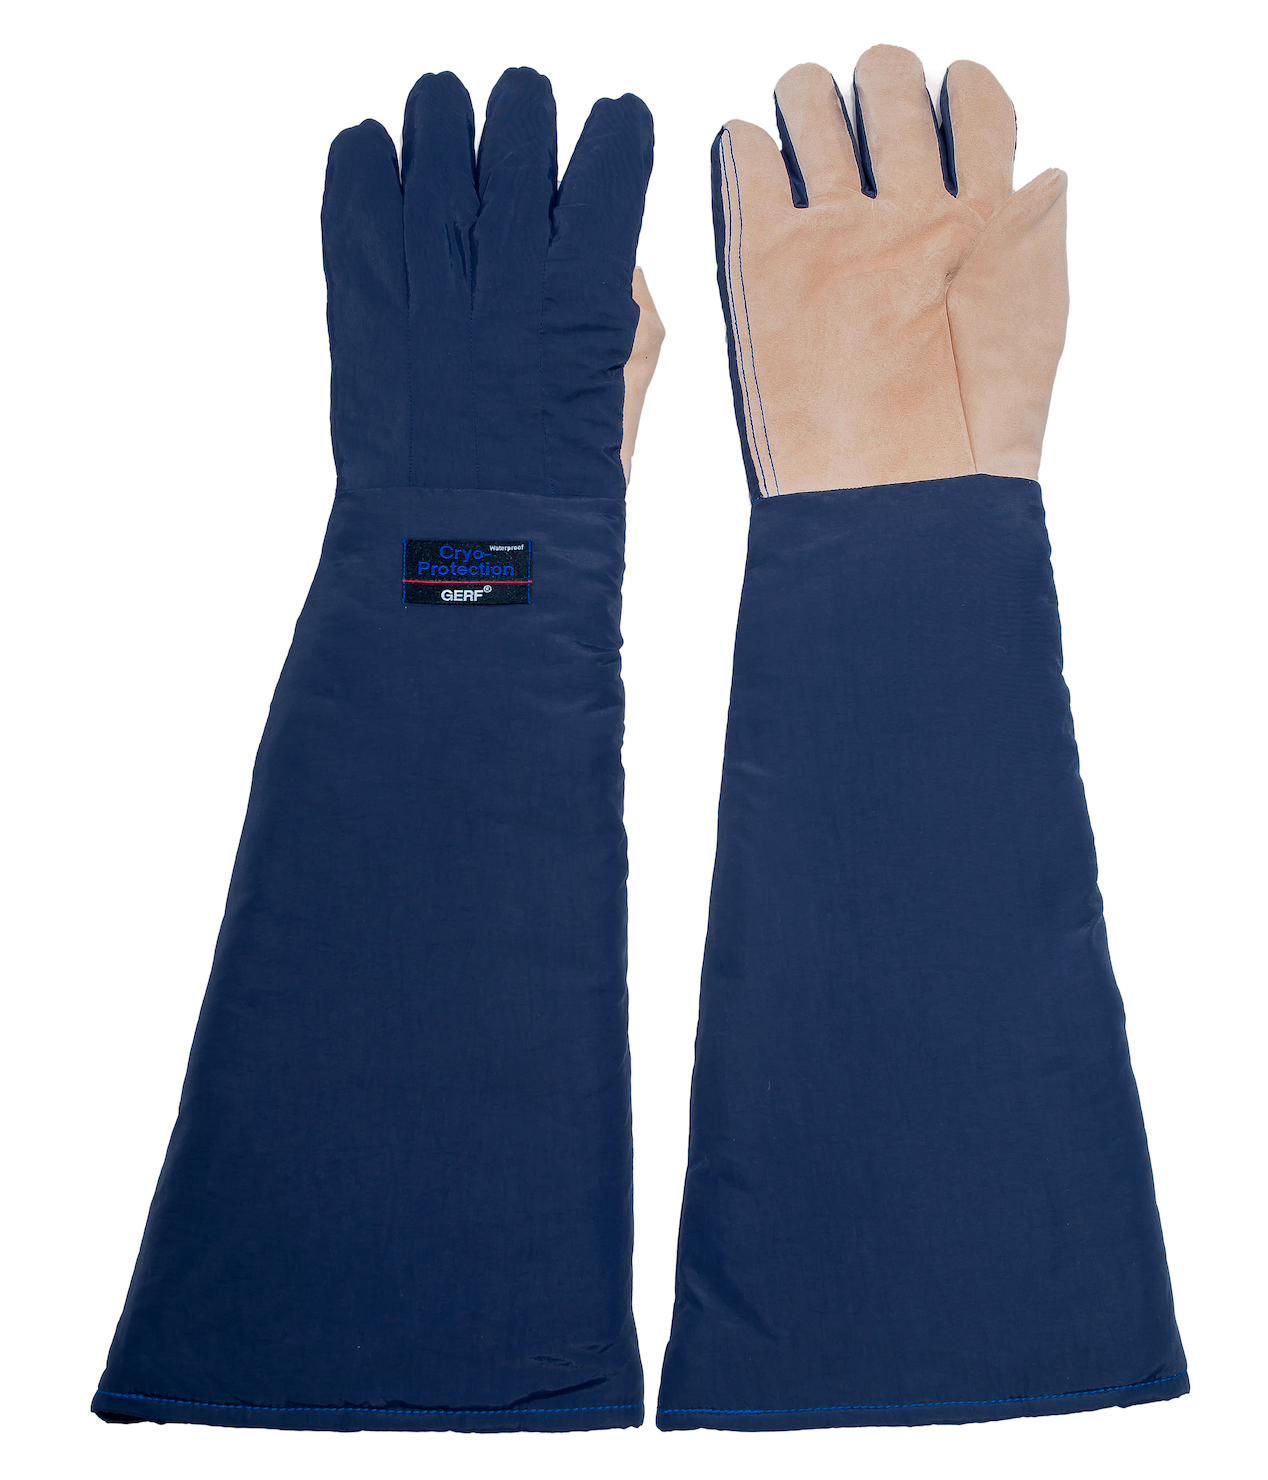 Waterproof Industrial Cryo Gloves